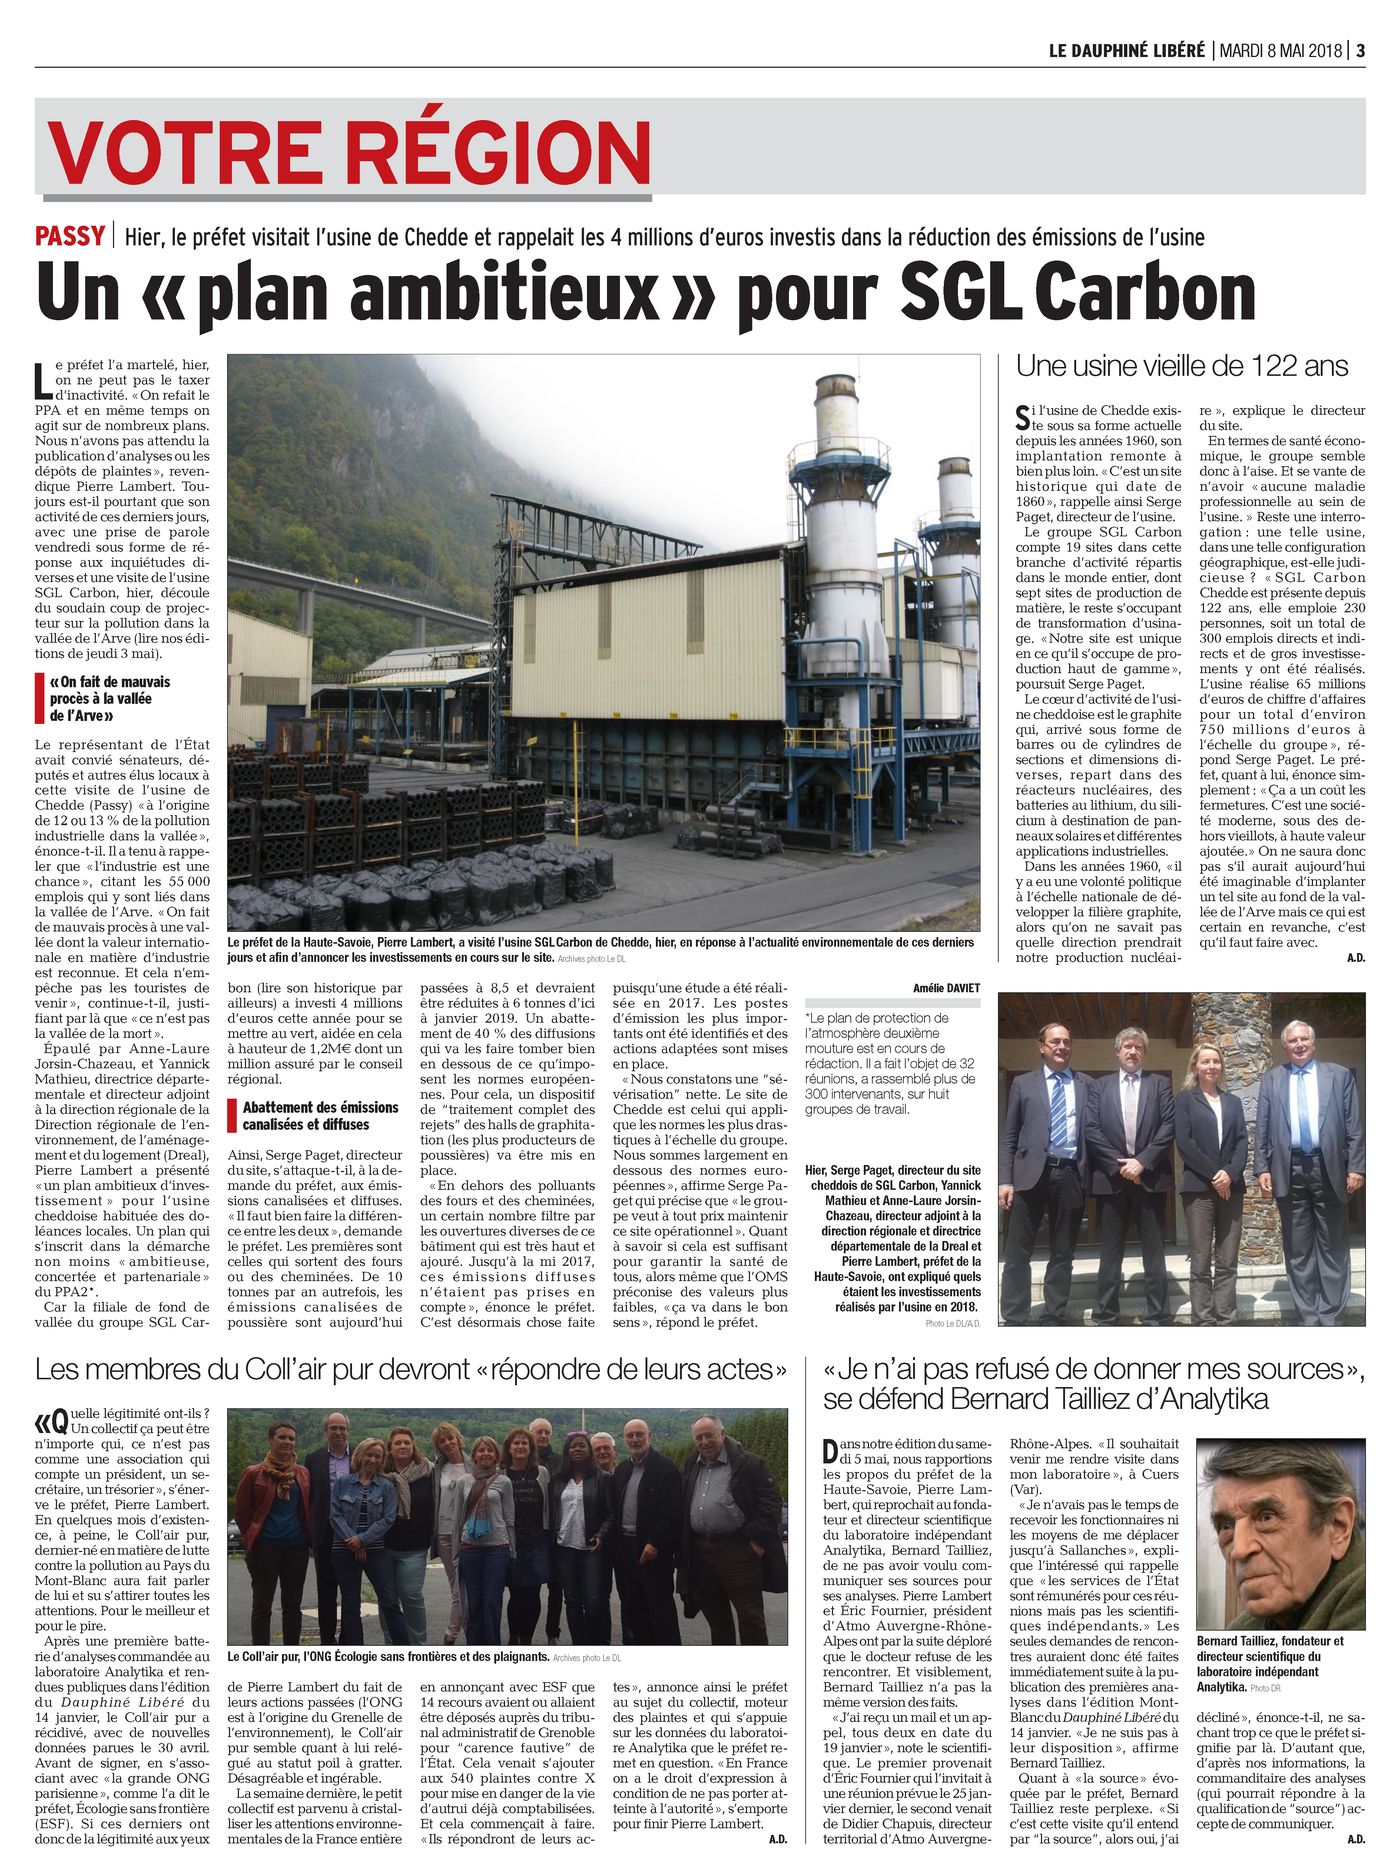 08.05.2018 > LE DAUPHINÉ LIBÉRÉ : "Un « plan ambitieux » pour SGL Carbon"